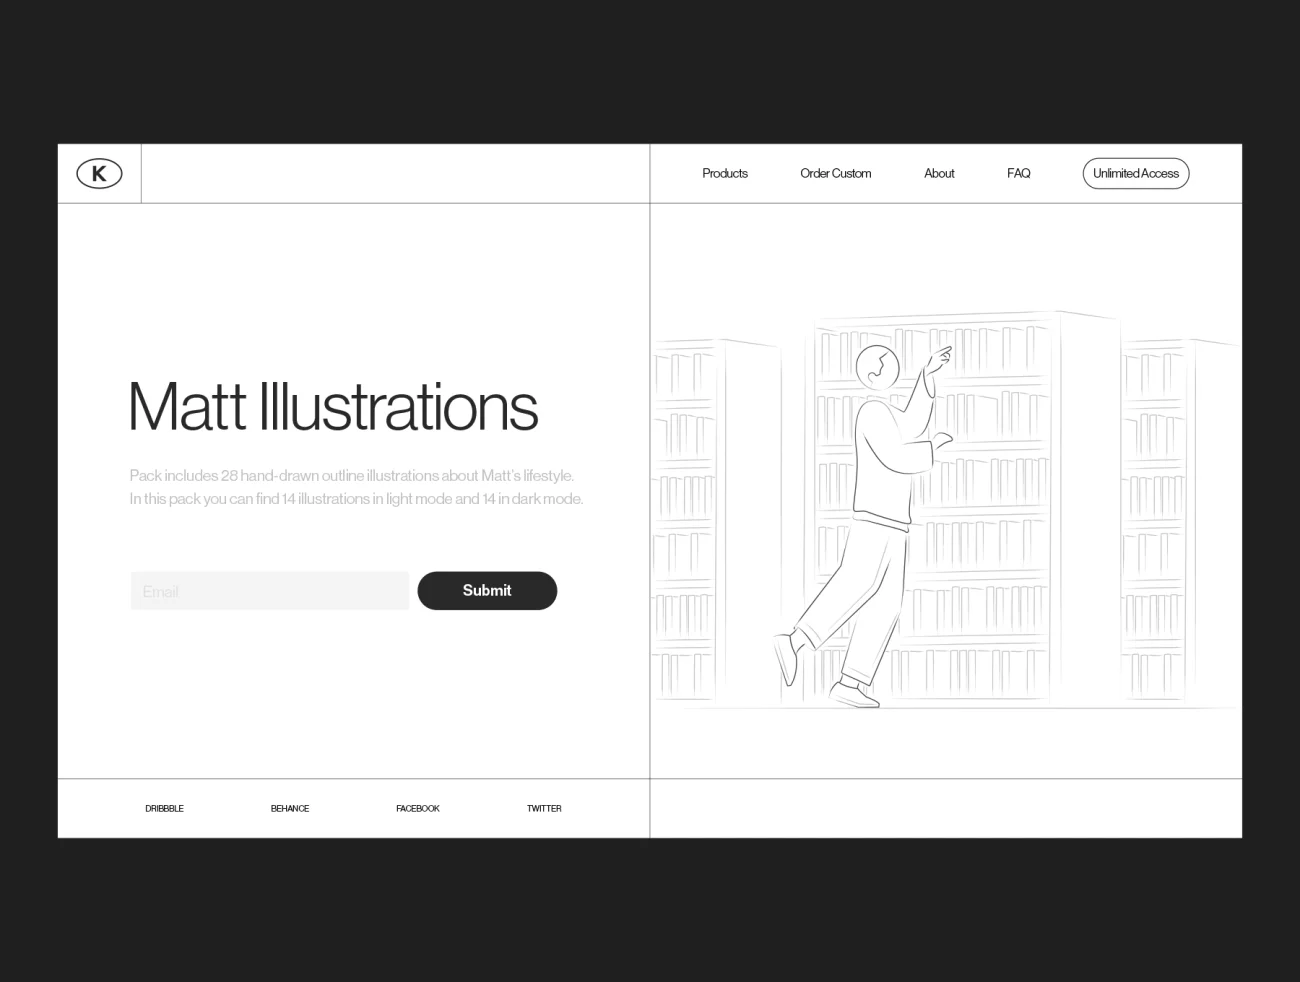 Matt Illustrations 28张手绘线条轮廓生活场景插图-人物插画、场景插画、学习生活、插画、插画功能、插画风格、状态页、社交购物、线条手绘、营销创业、趣味漫画、运动健身-到位啦UI